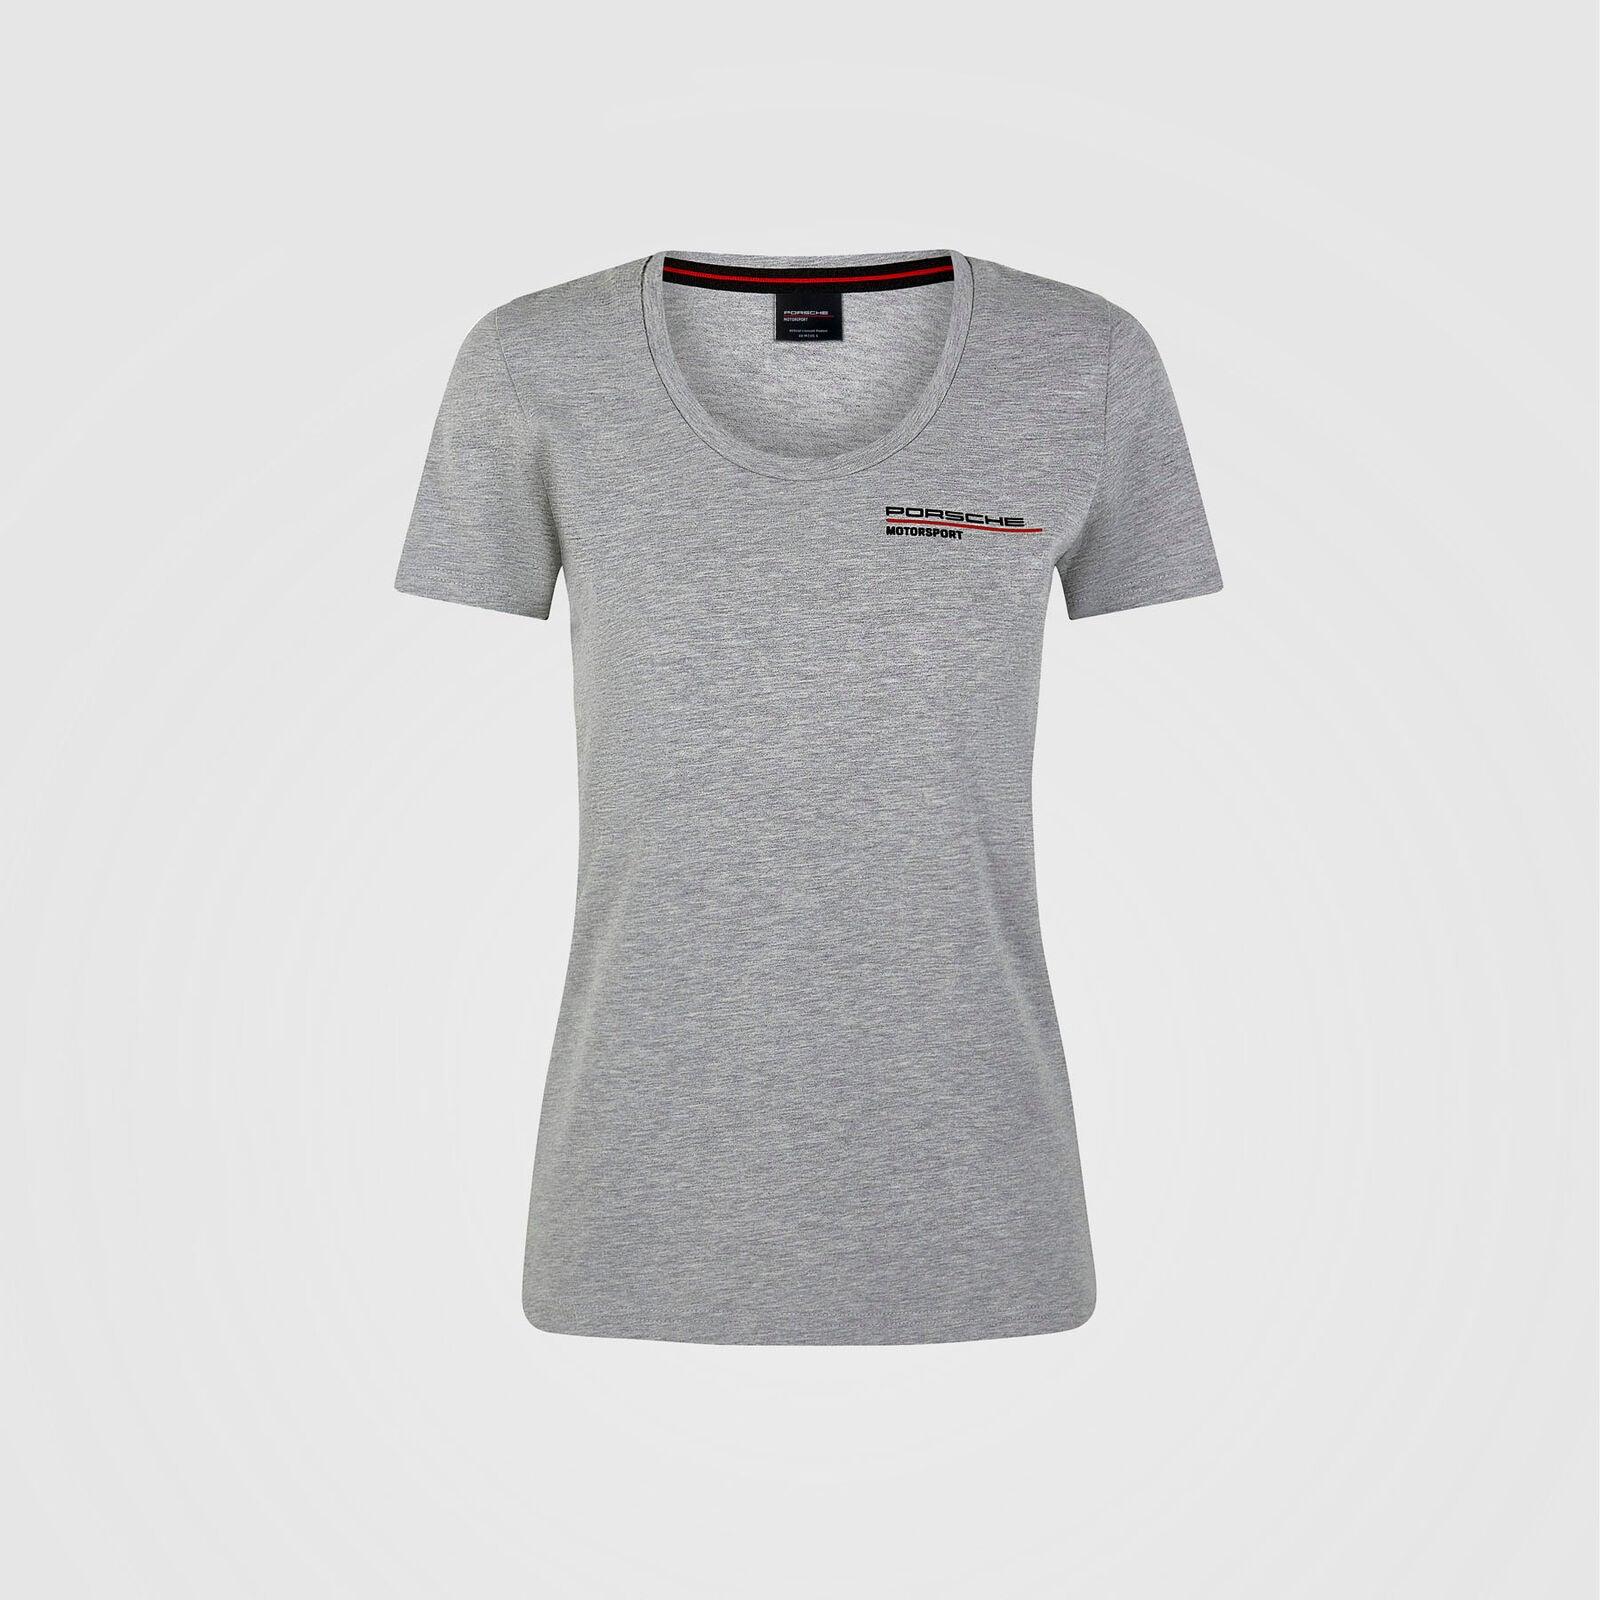 Porsche Motorsport Womens Logo T-Shirt - Rustle Racewears